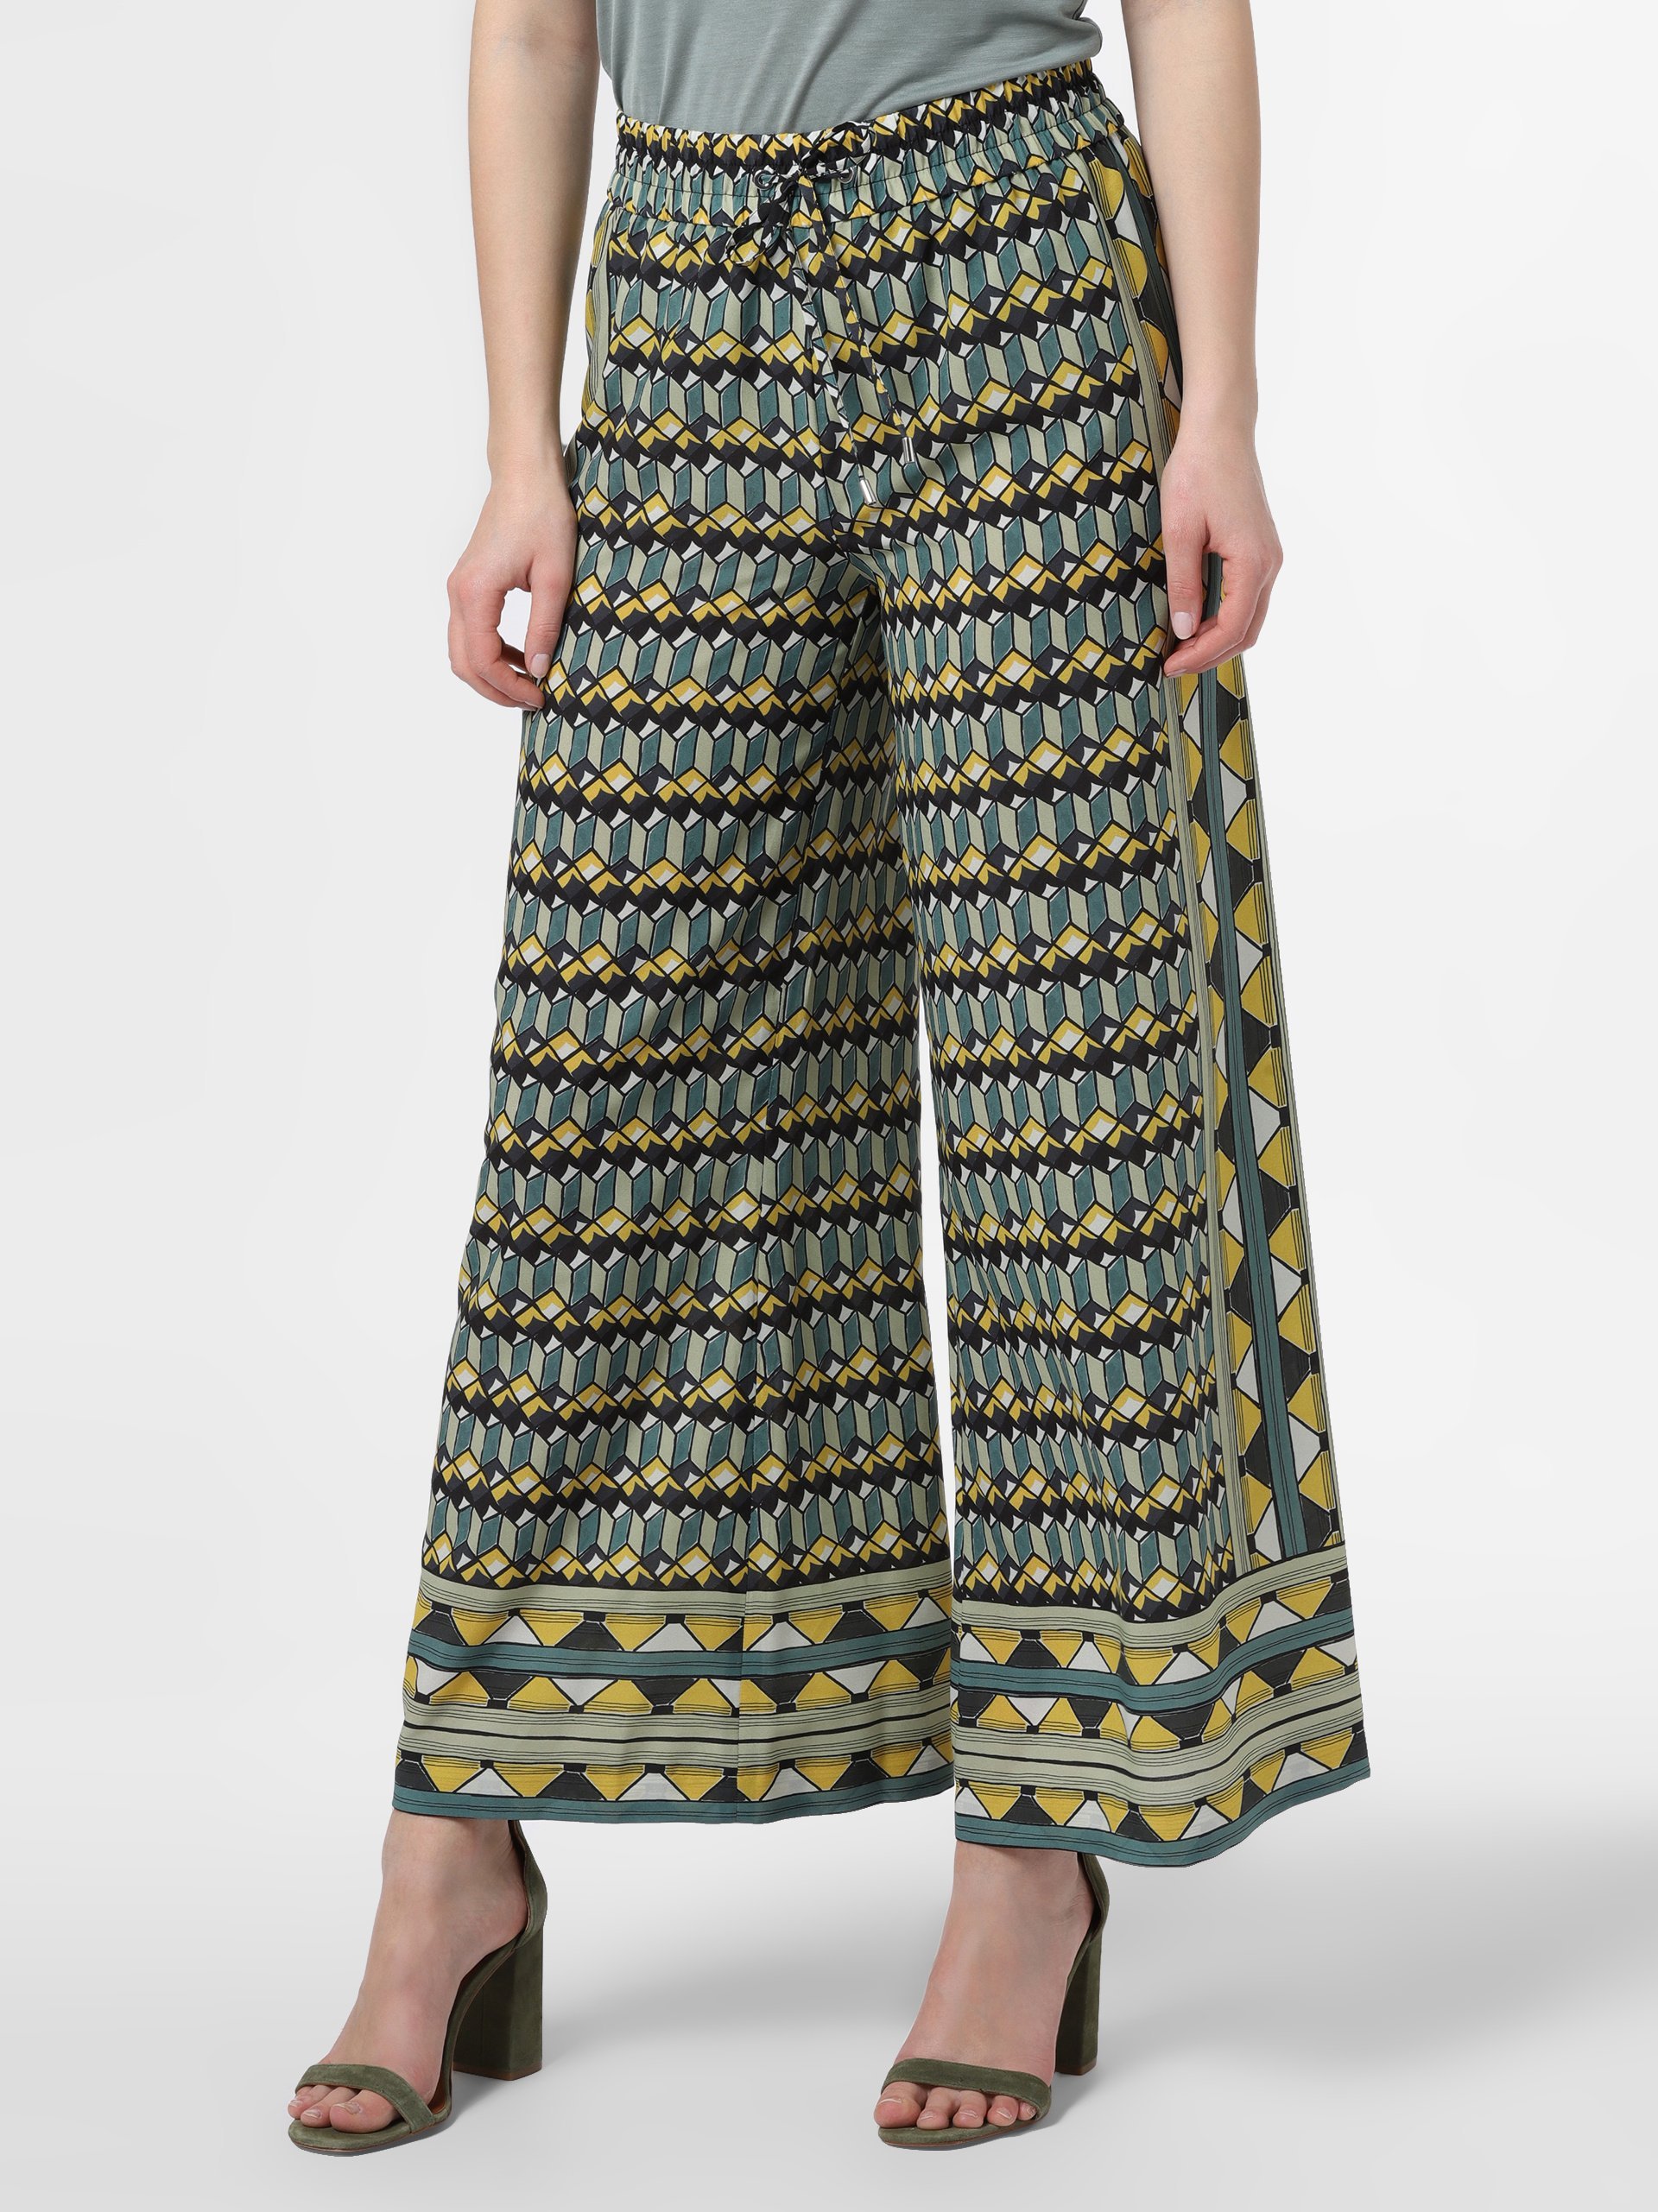 chanel tweed skirt